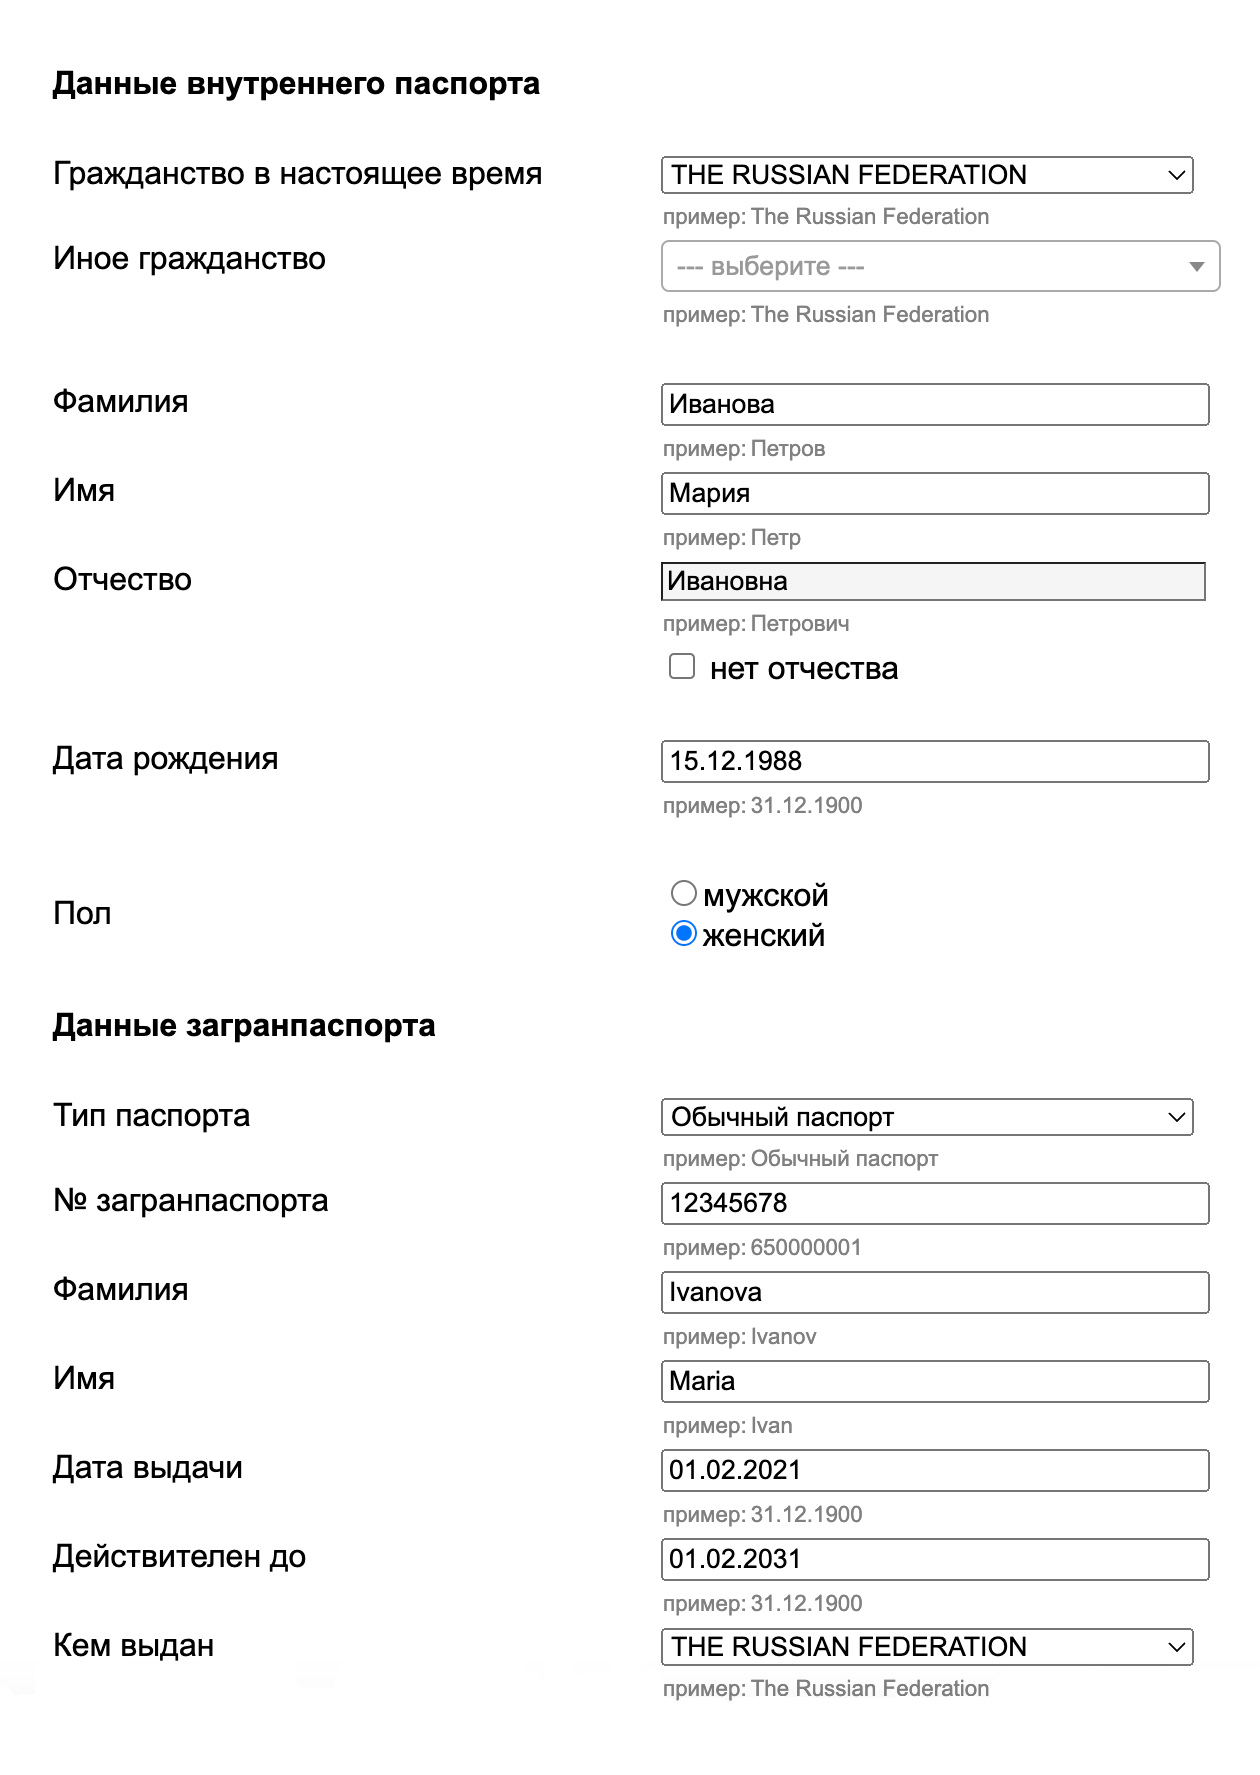 Сайт визового центра подскажет, какую информацию нужно вносить на русском языке, а какую — на английском. Источник: italy⁠-⁠vms.ru